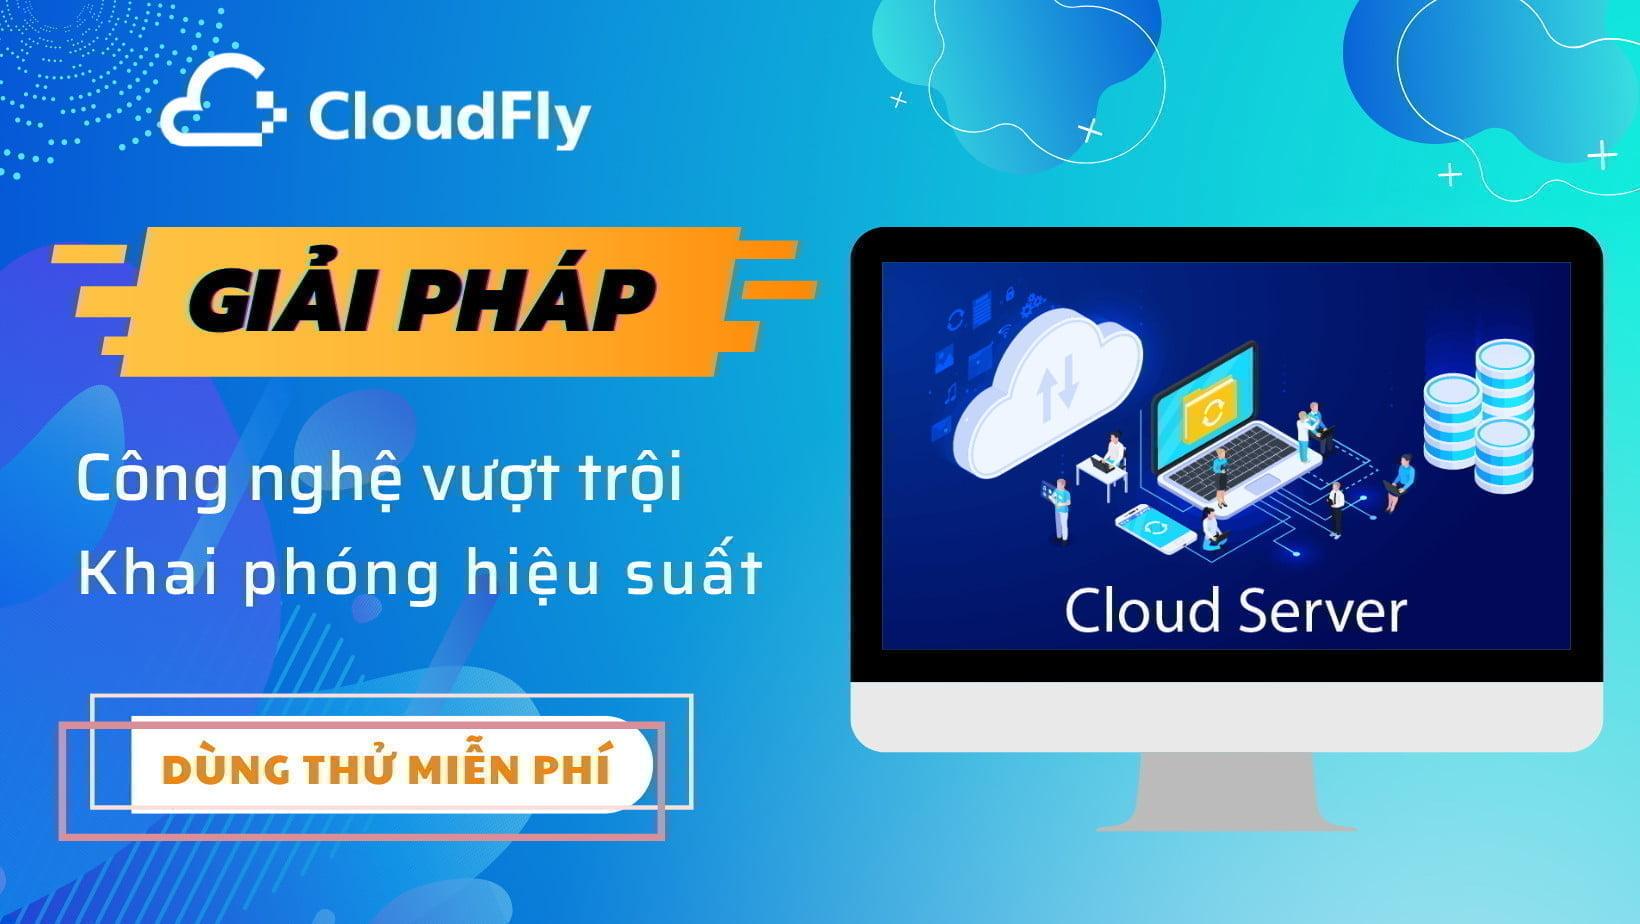 cloudfly cung cấp cloud server chất lượng giá rẻ